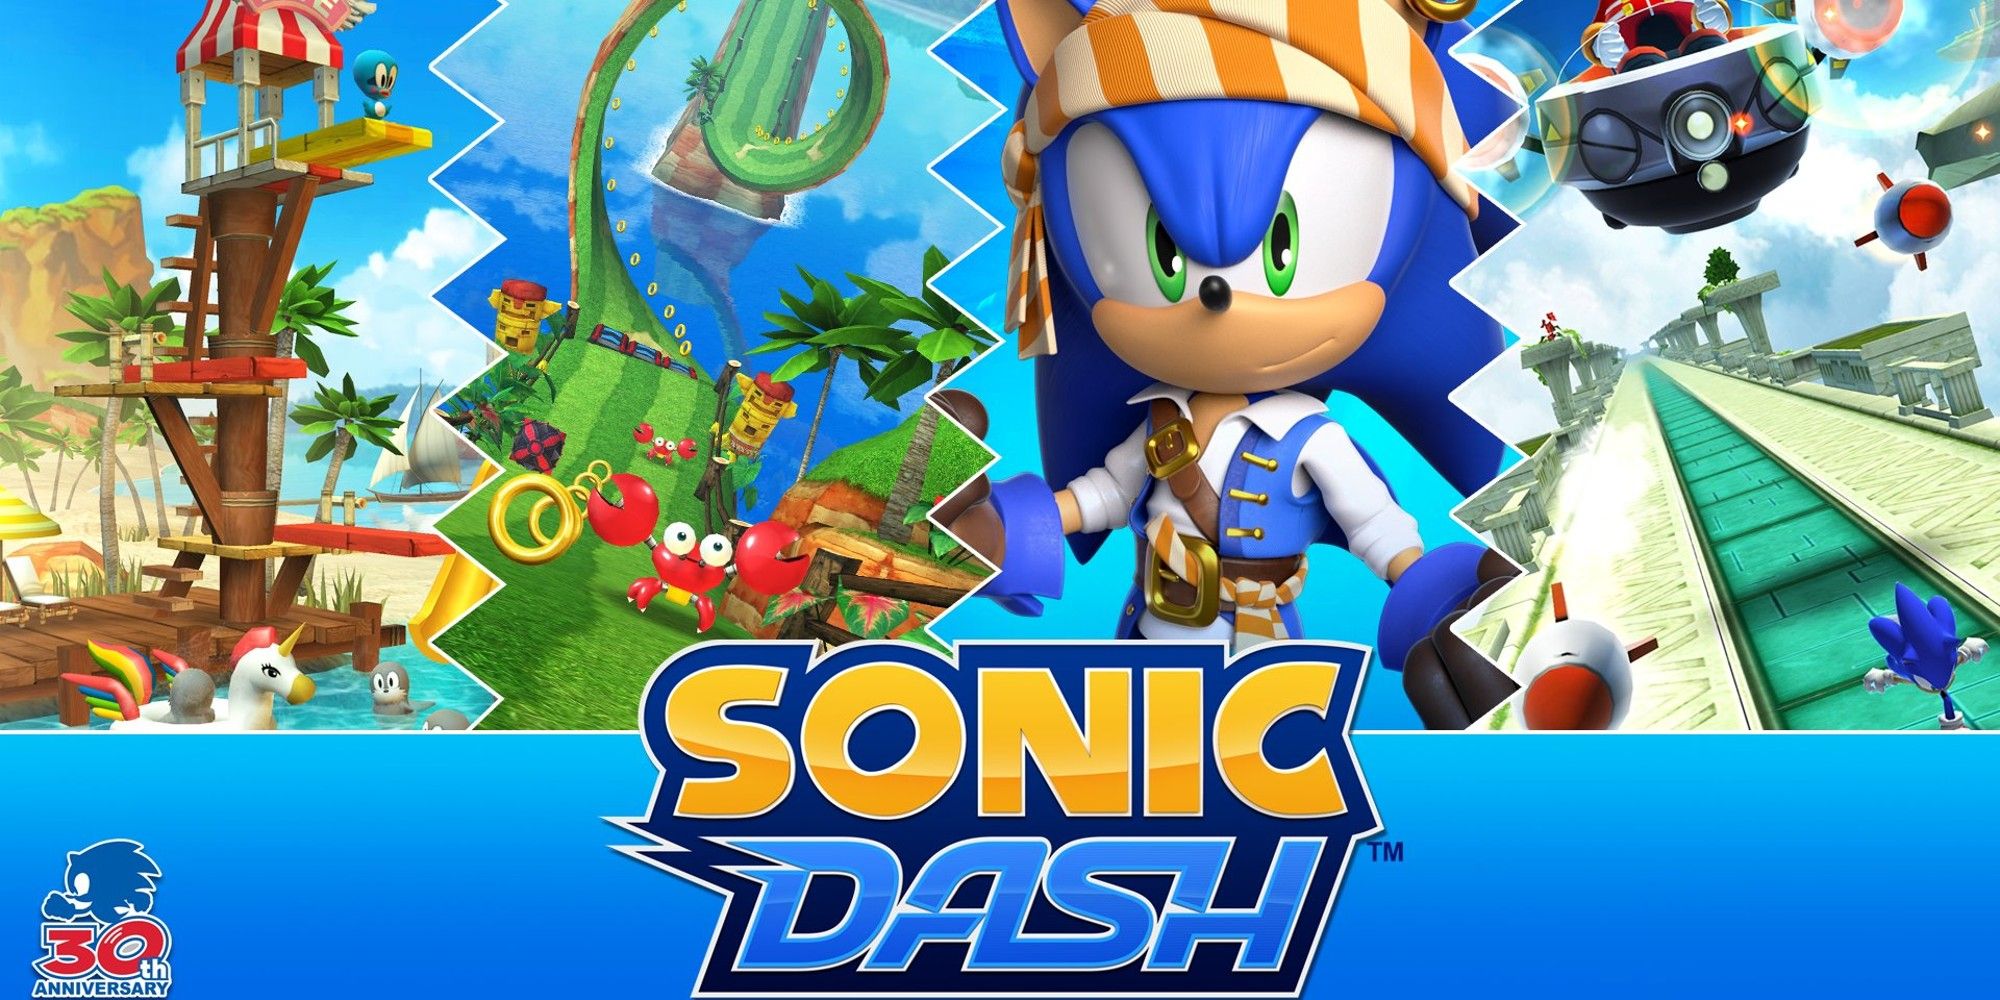 Sonic Dash_500 million downloads_2000x1000